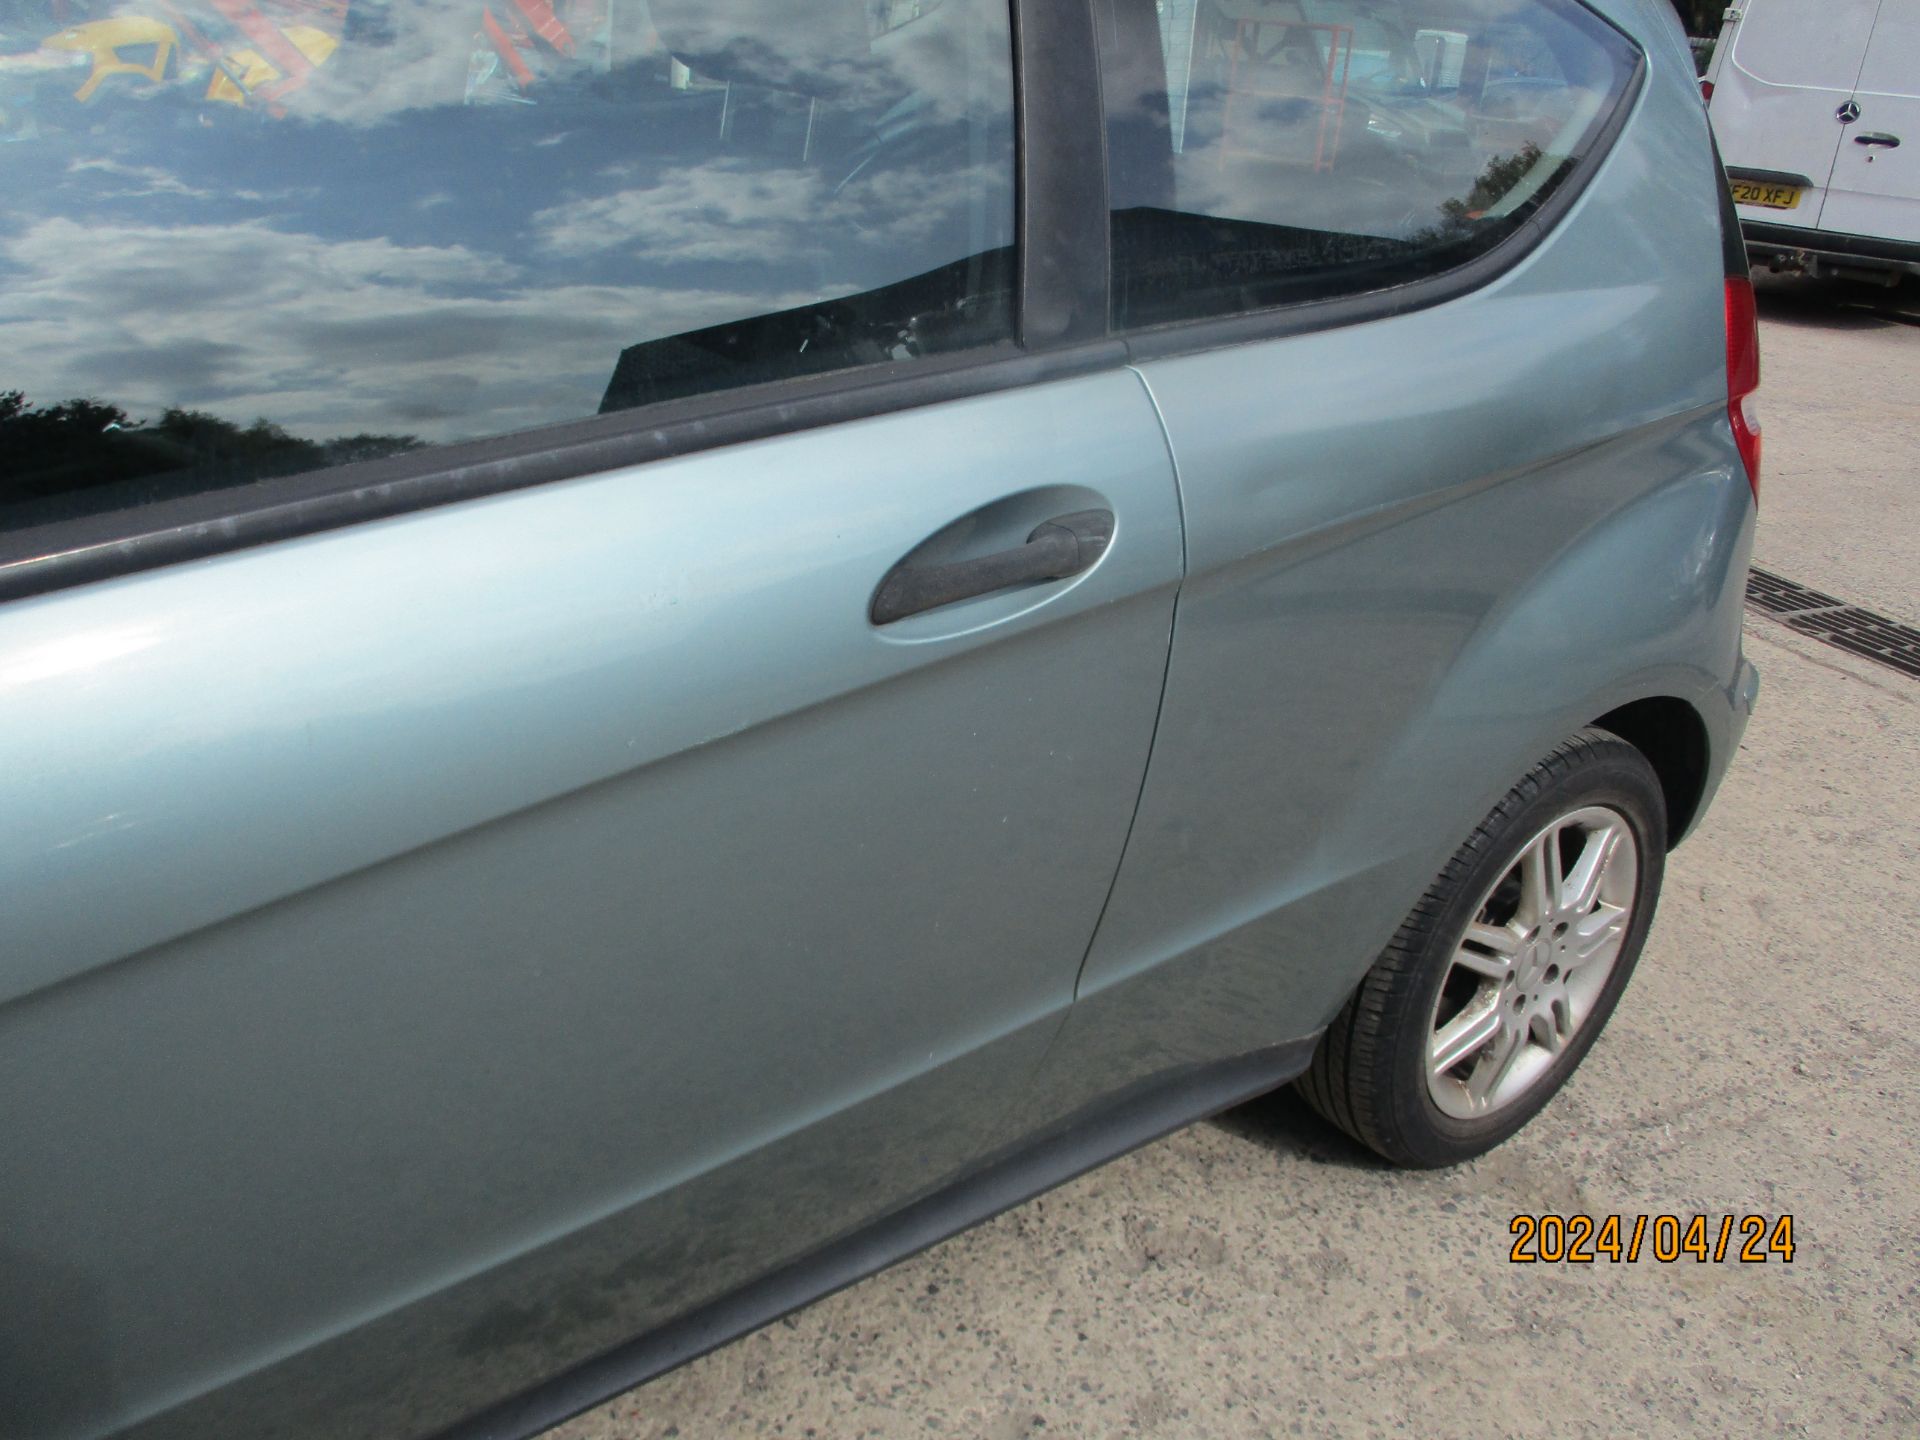 05/05 MERCEDES A150 CLASSIC SE - 1498cc 3dr Hatchback (Blue, 111k) - Image 11 of 20